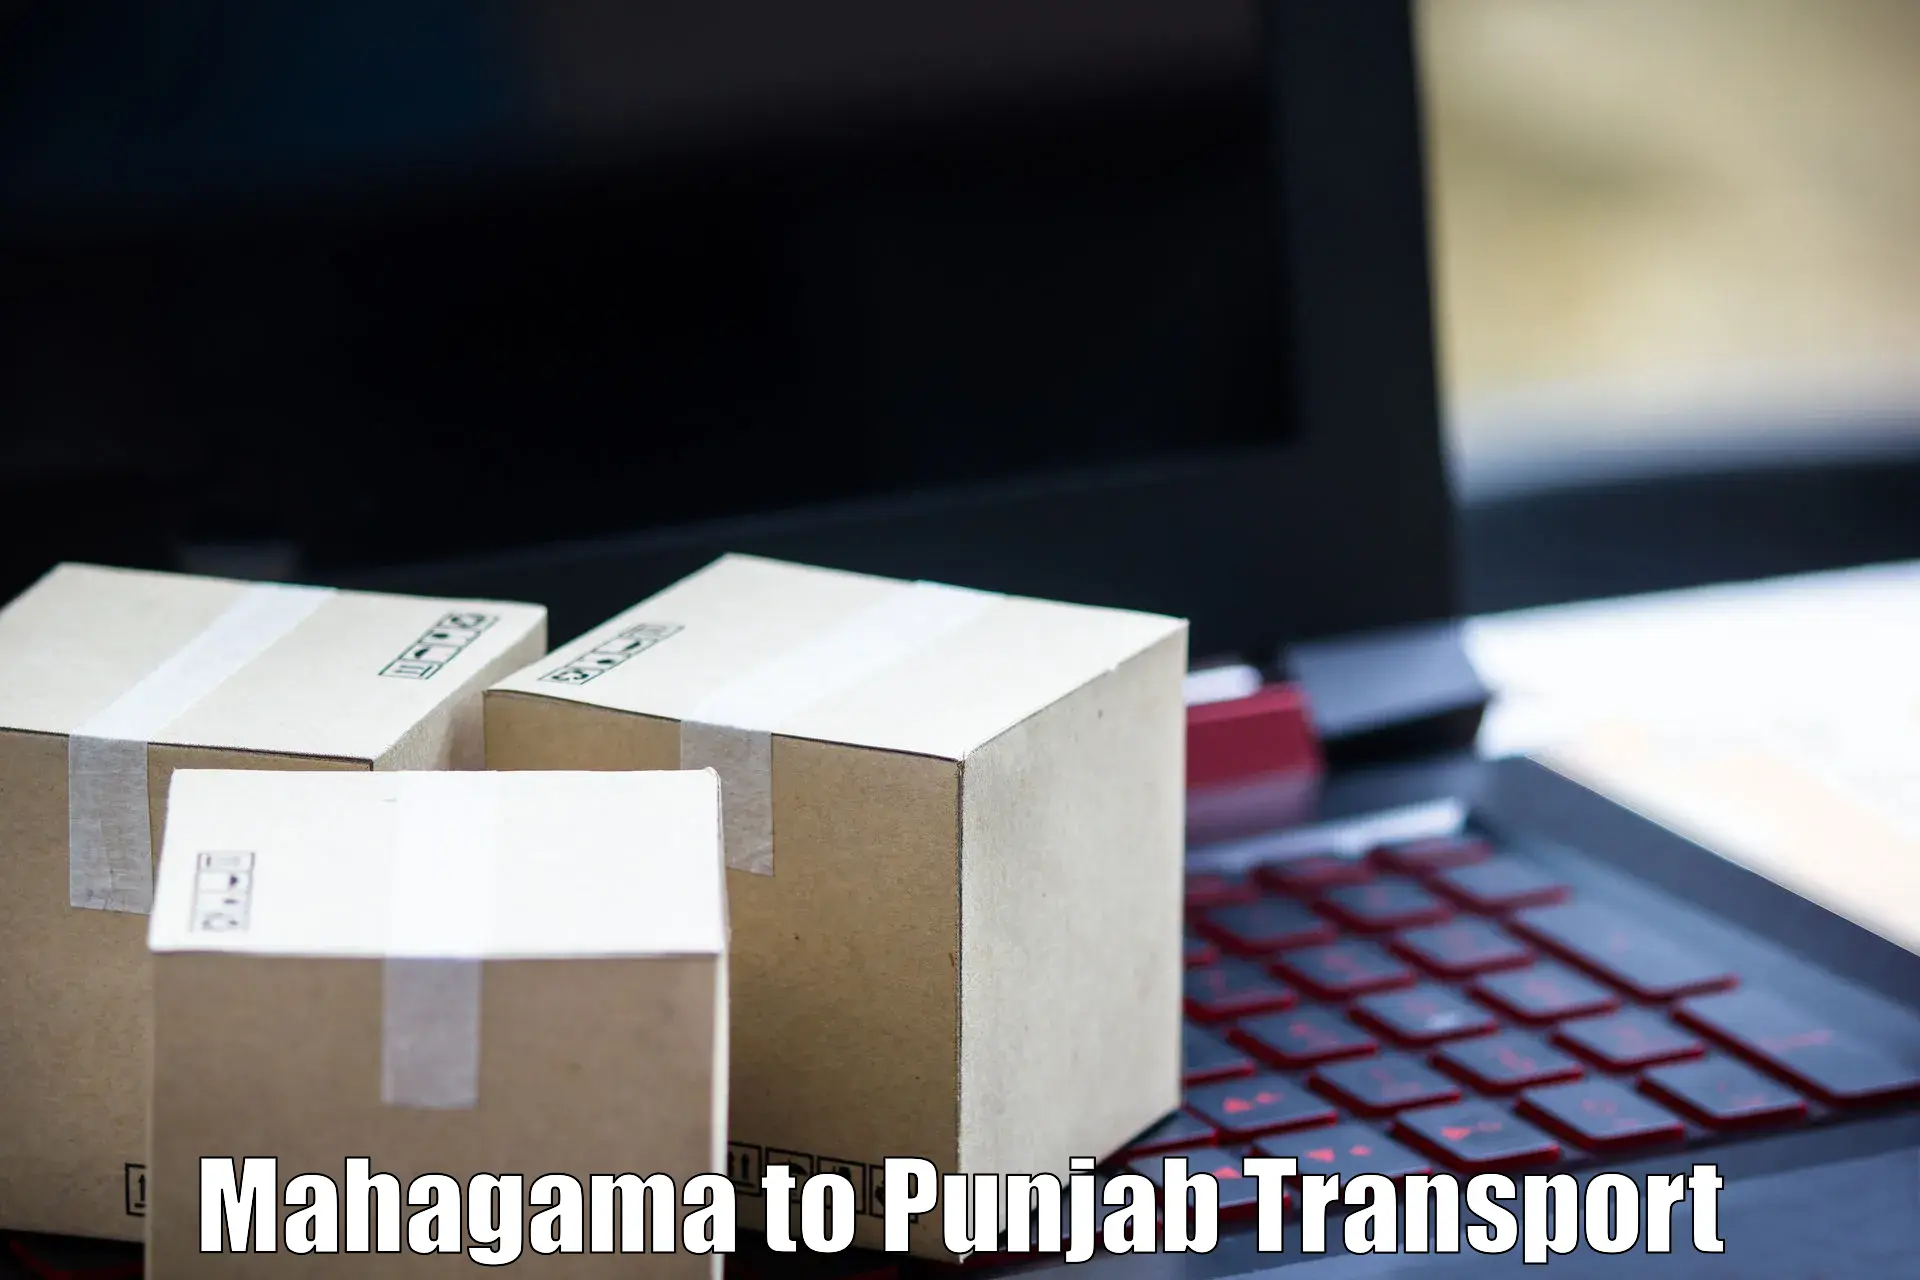 Commercial transport service Mahagama to Rupnagar